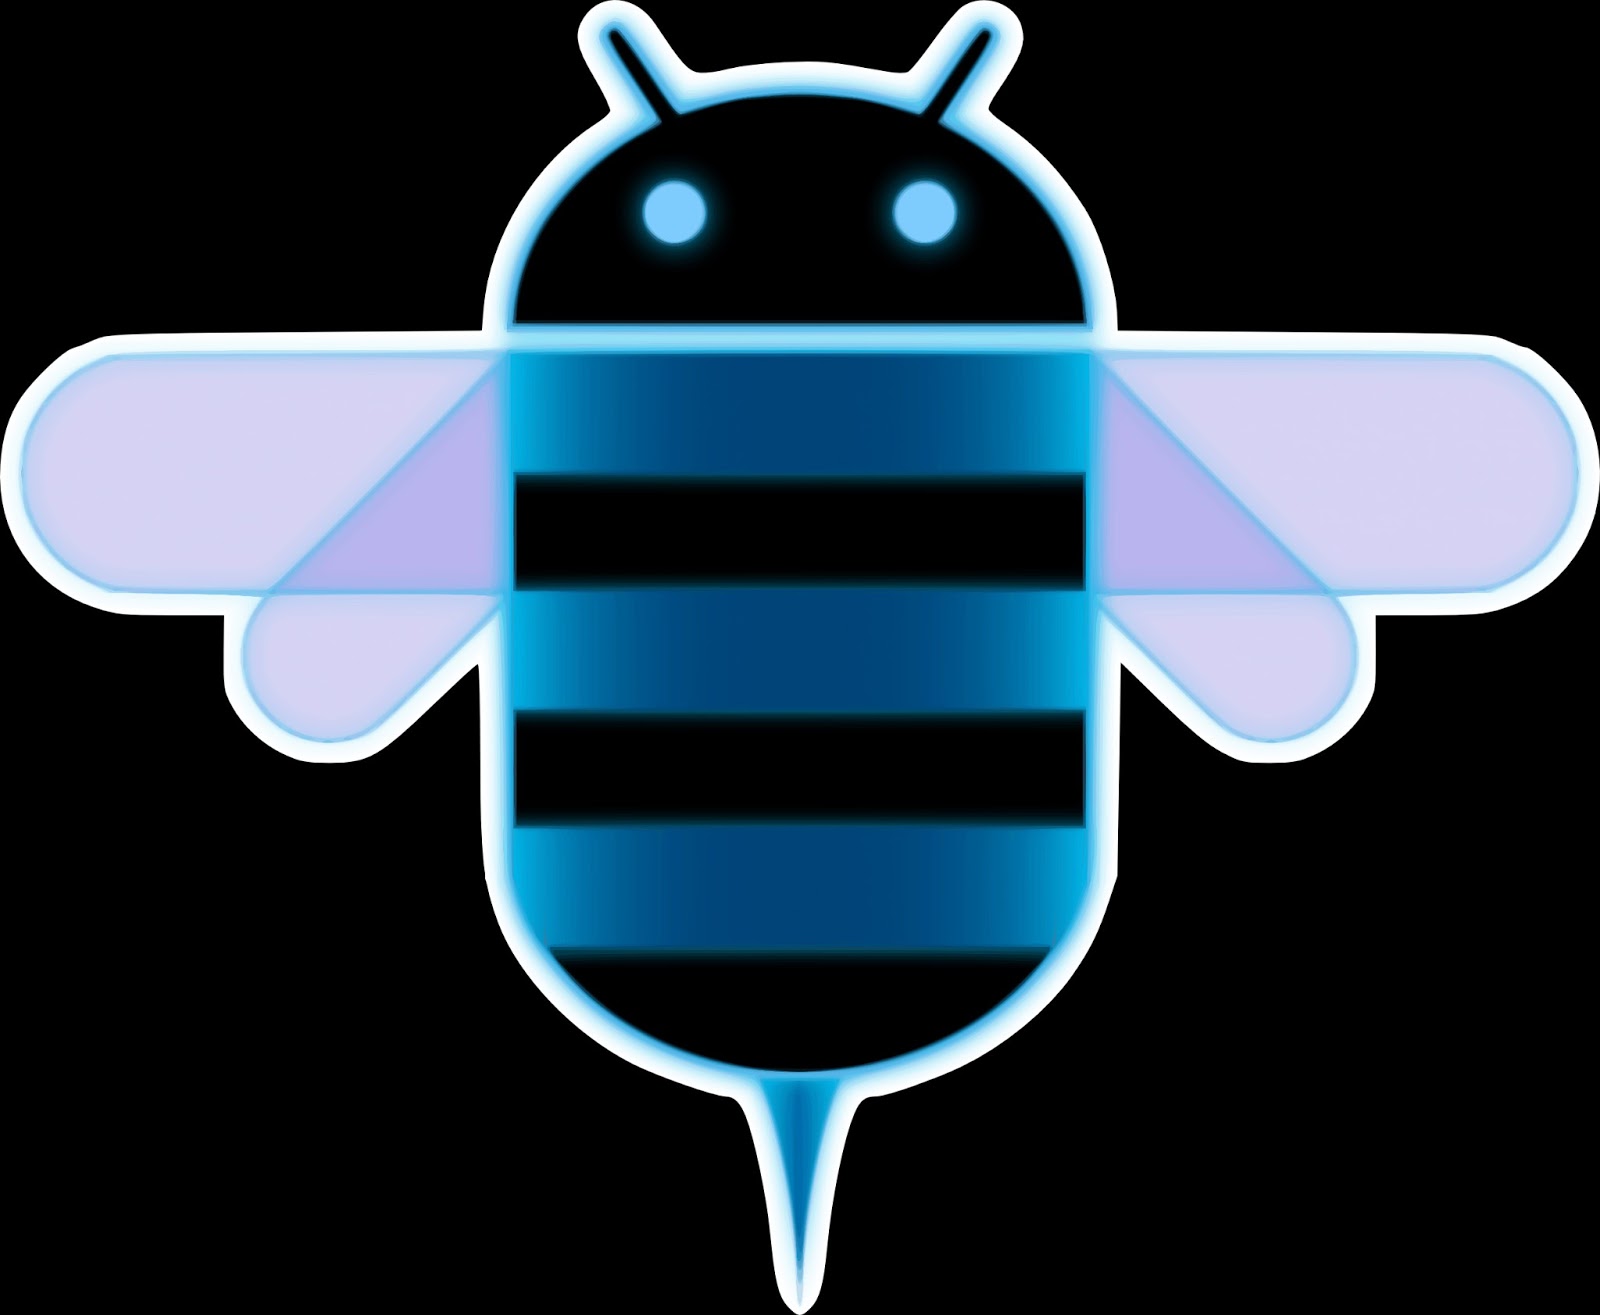 Apk андроид 0. Honeycomb андроид. Android 3.0 Honeycomb. Логотип андроид. Андроид пчела.